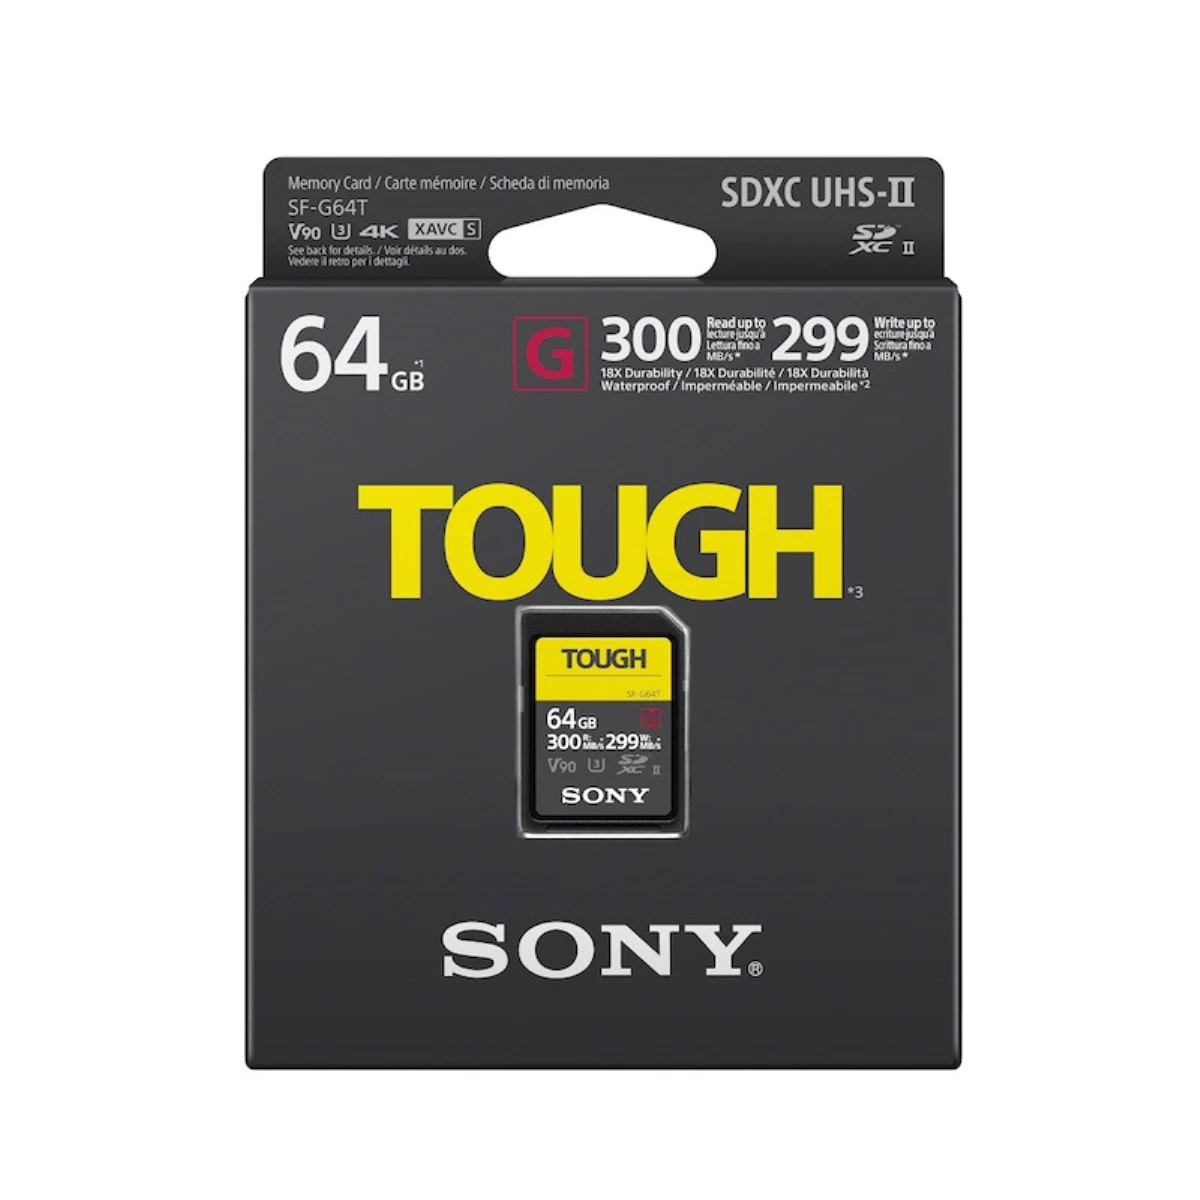 Sony Tough Sf-G Serisi Uhs-Iı Sd Kart Yelpazesi Mükemmel Koruma Sağlıyor